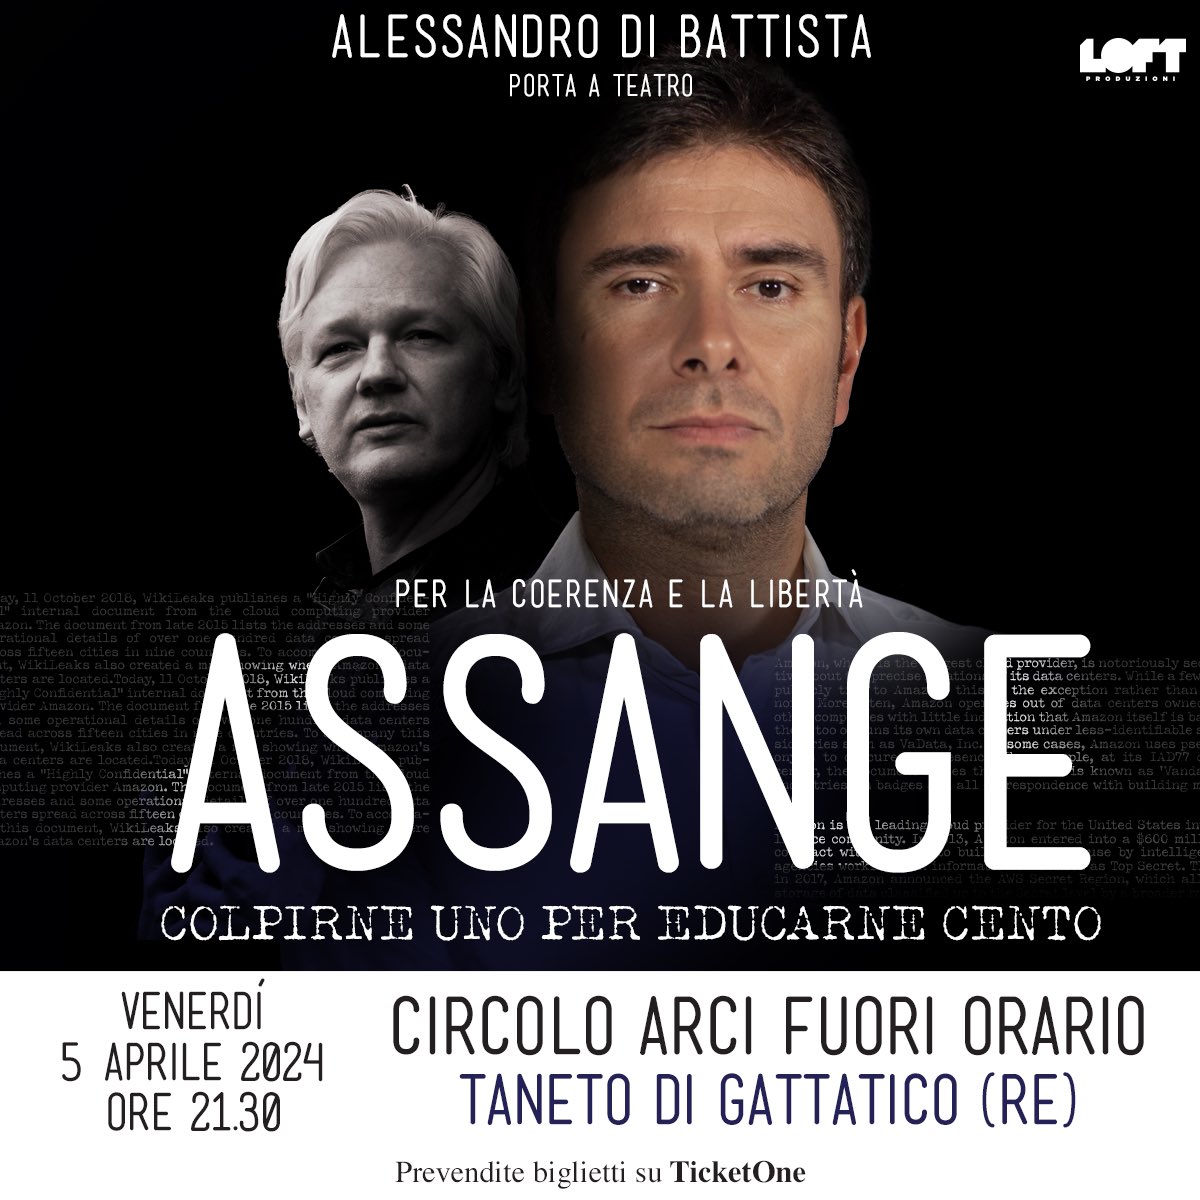 Domani (venerdì 5 aprile) sarò a TANETO DI GATTATICO (Reggio Emilia). Vi aspetto a teatro. I biglietti li trovate qui 👉 bit.ly/DiBattistaAssa… #FreeAssangeNOW